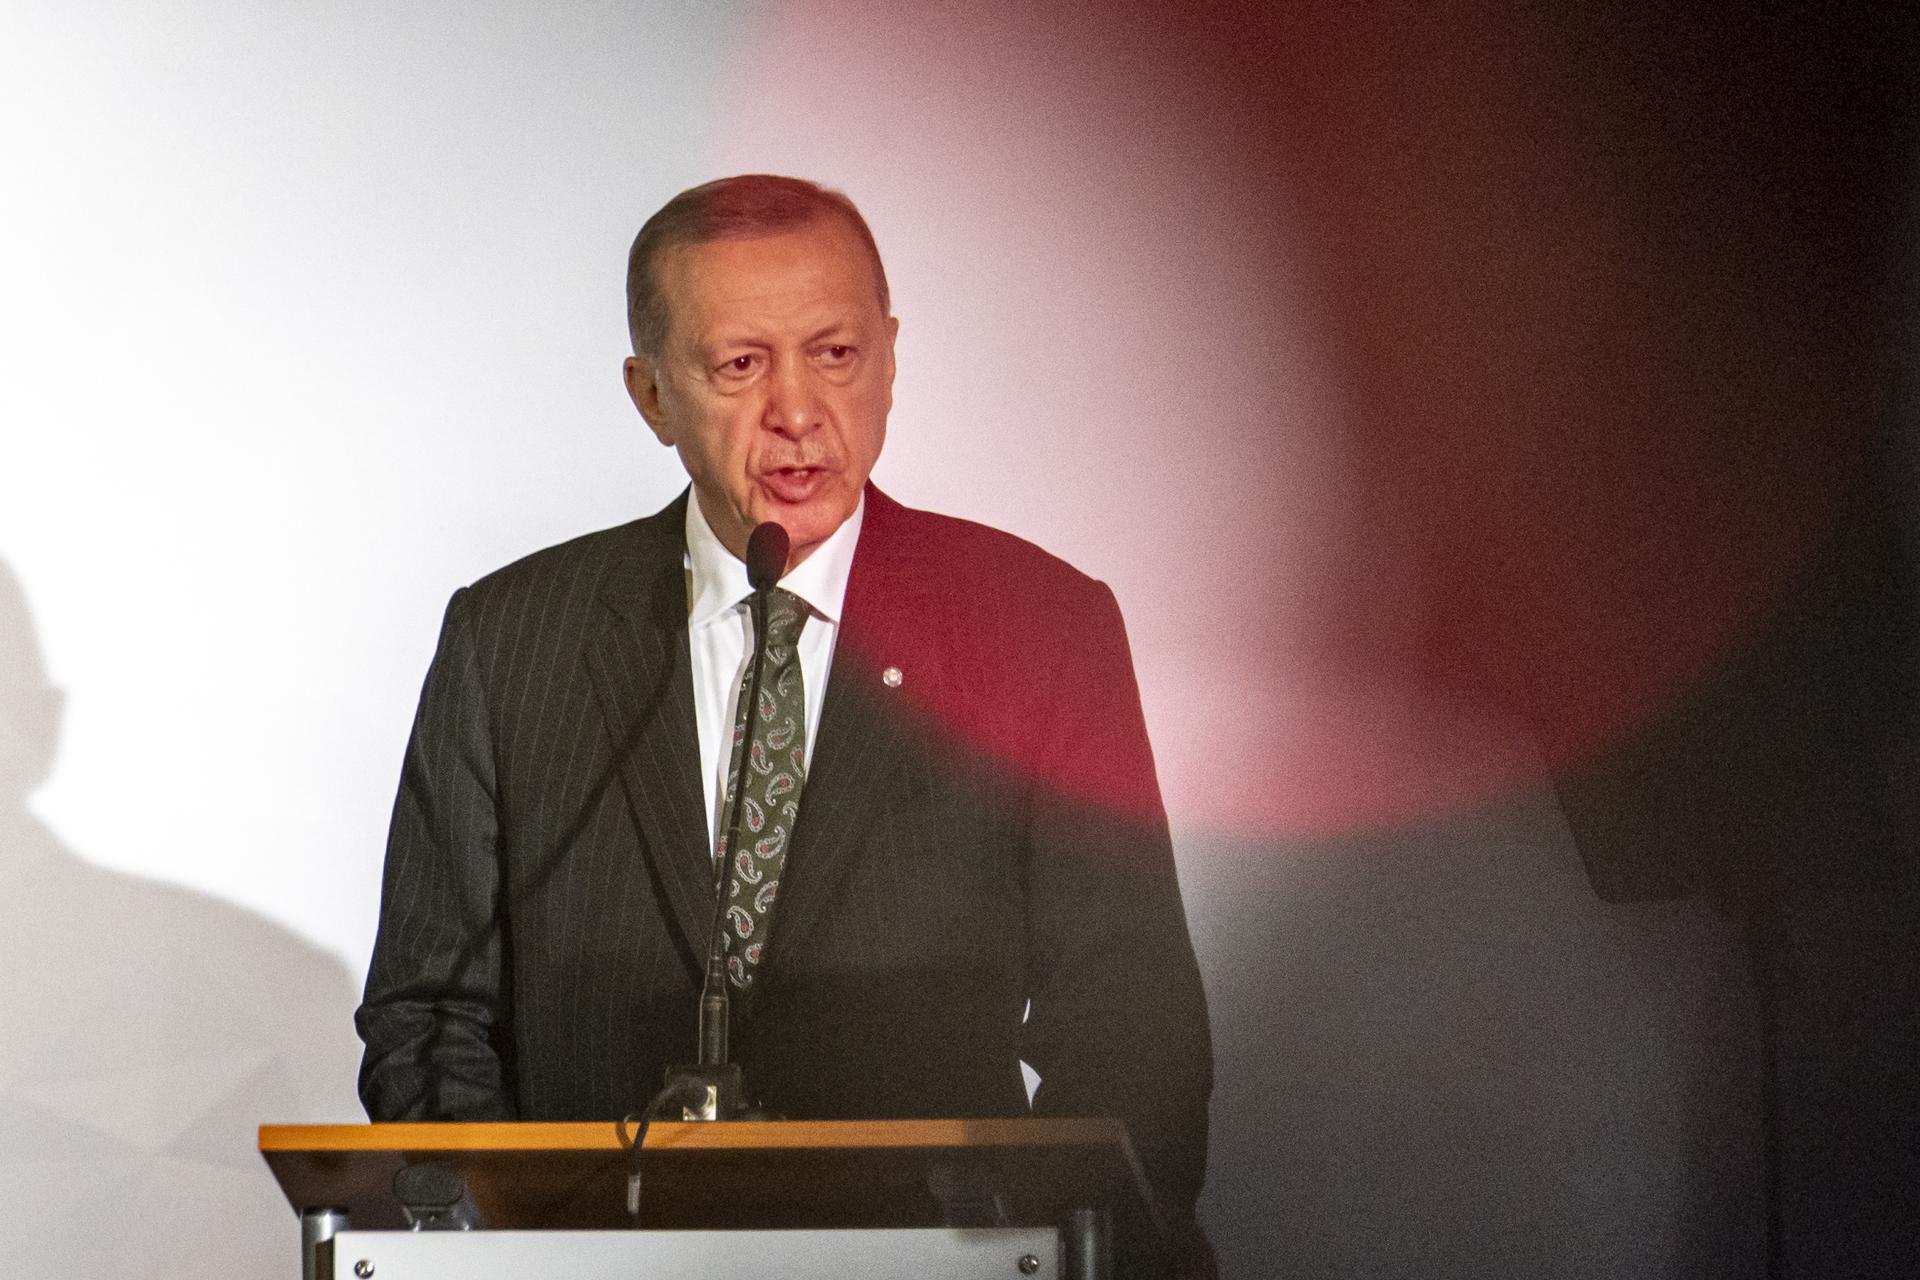 File photo showing Turkish President Recep Tayyip Erdogan. EFE/EPA/MARTIN DIVISEK